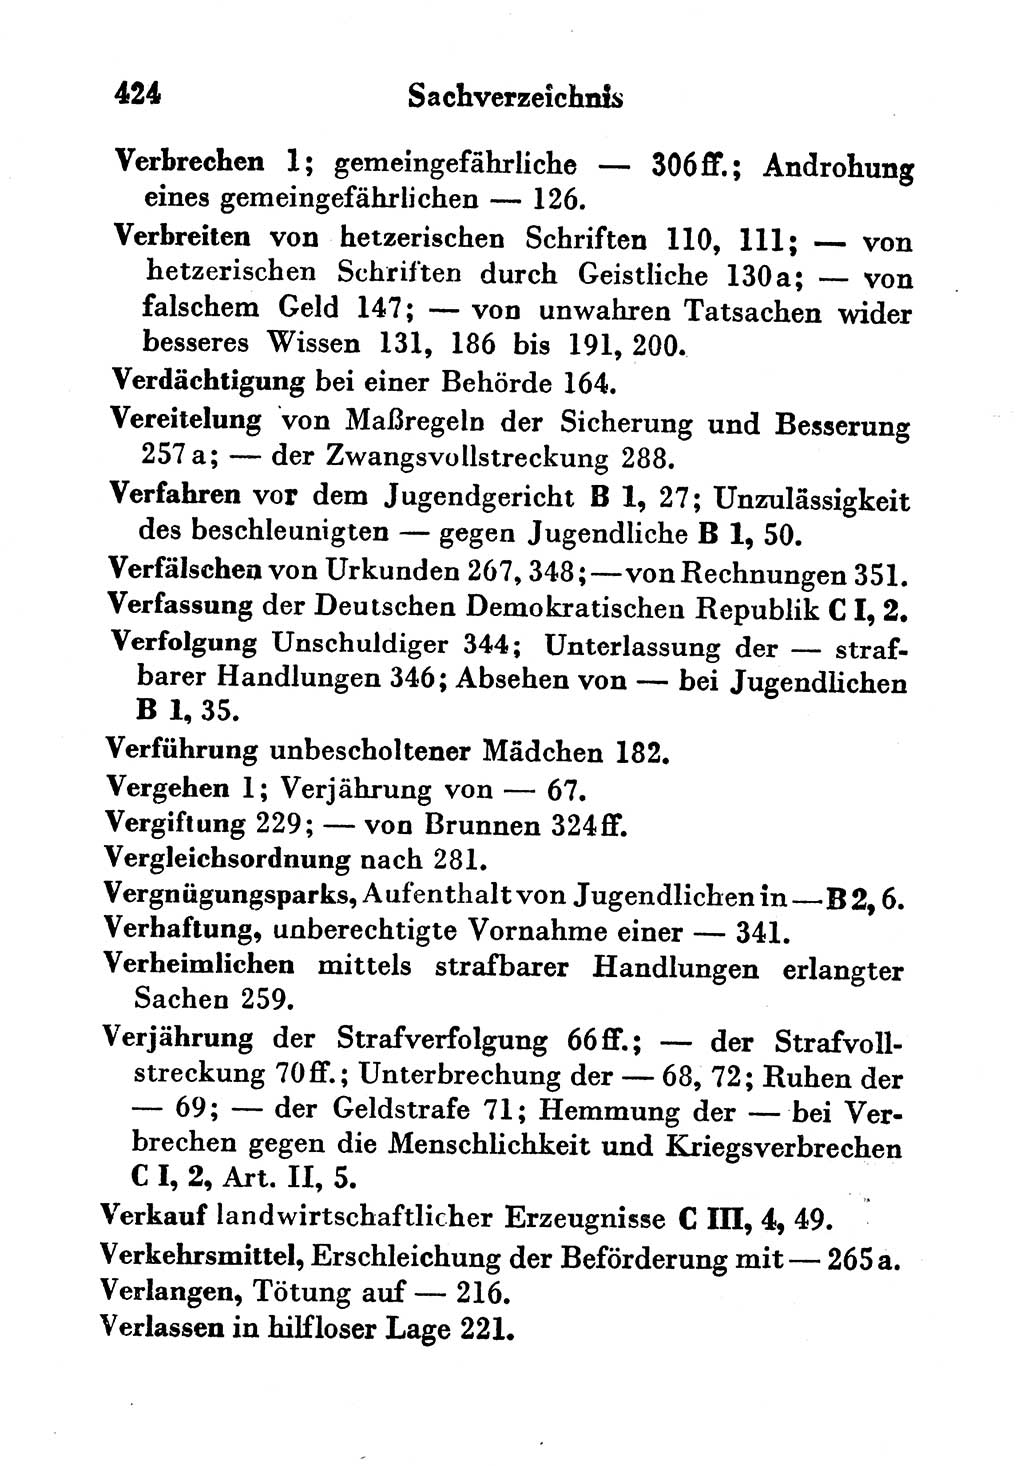 Strafgesetzbuch (StGB) und andere Strafgesetze [Deutsche Demokratische Republik (DDR)] 1956, Seite 424 (StGB Strafges. DDR 1956, S. 424)